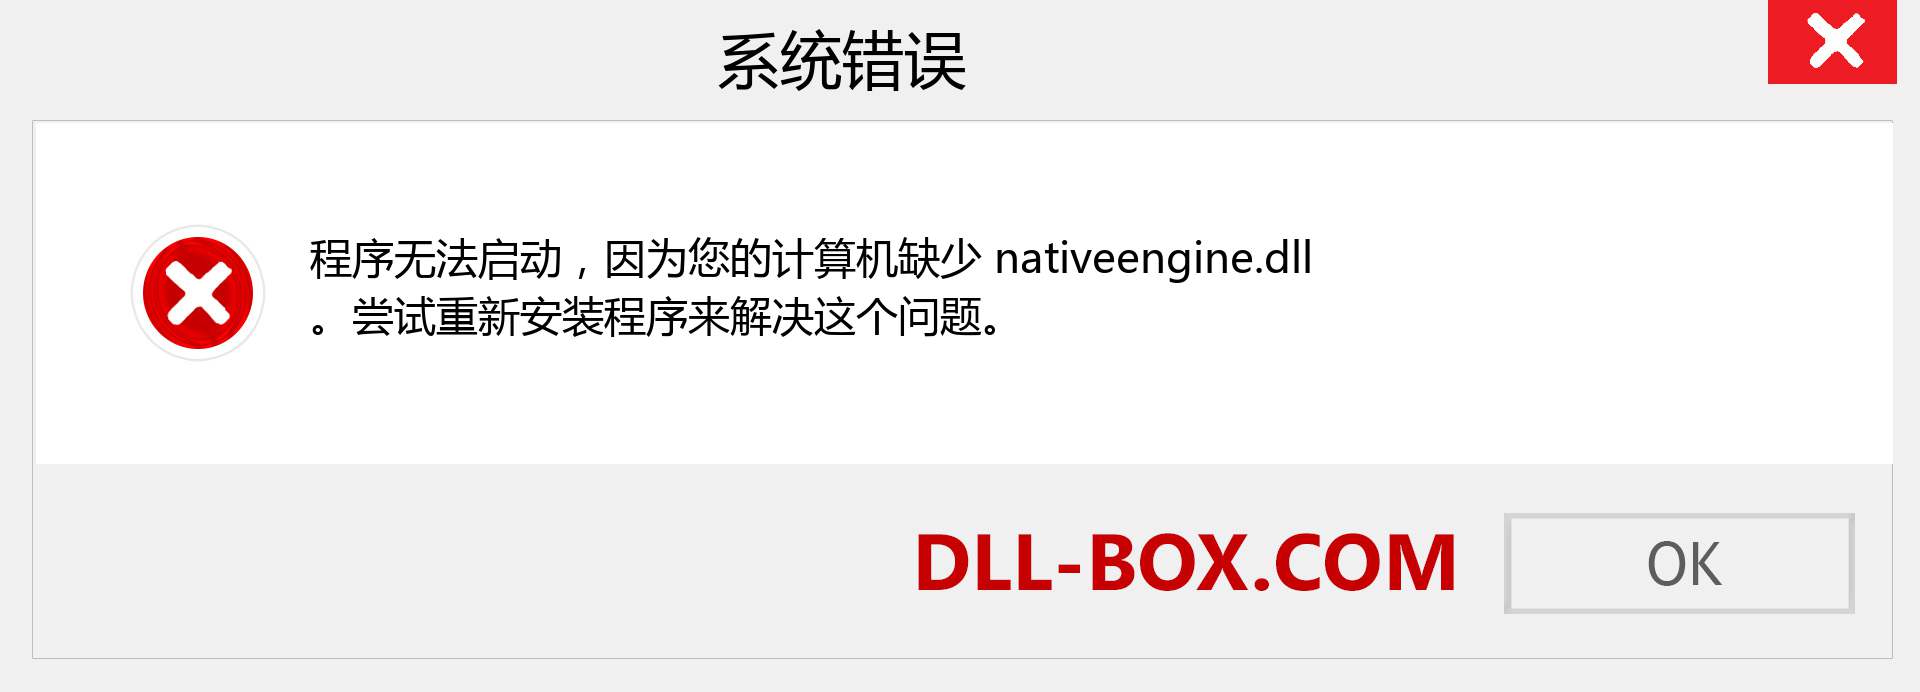 nativeengine.dll 文件丢失？。 适用于 Windows 7、8、10 的下载 - 修复 Windows、照片、图像上的 nativeengine dll 丢失错误